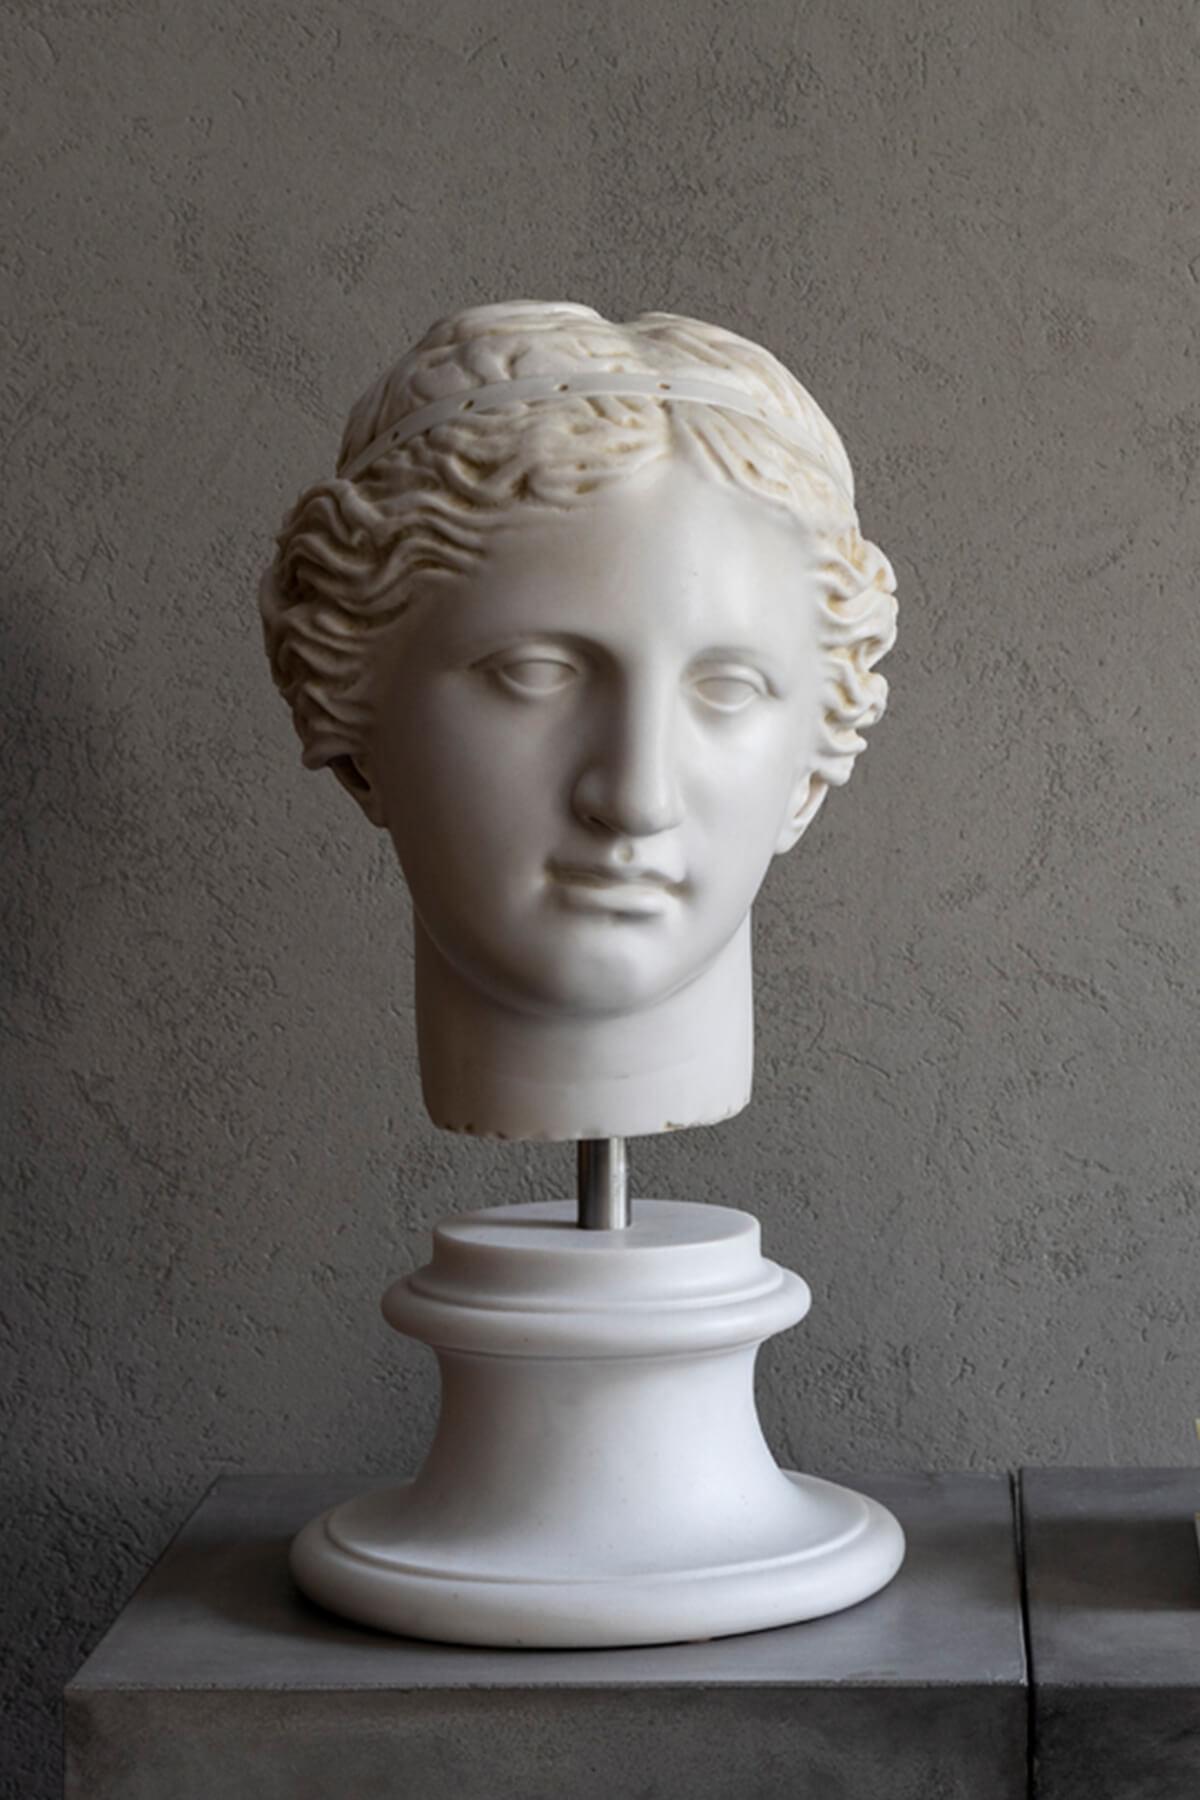 Aphrodite est connue comme la déesse de l'amour et de la beauté dans la mythologie grecque. Dans la mythologie romaine, elle est appelée Vénus. L'original est exposé au musée du Louvre à Paris.

Aphrodite, déesse de l'amour et de la beauté dans la